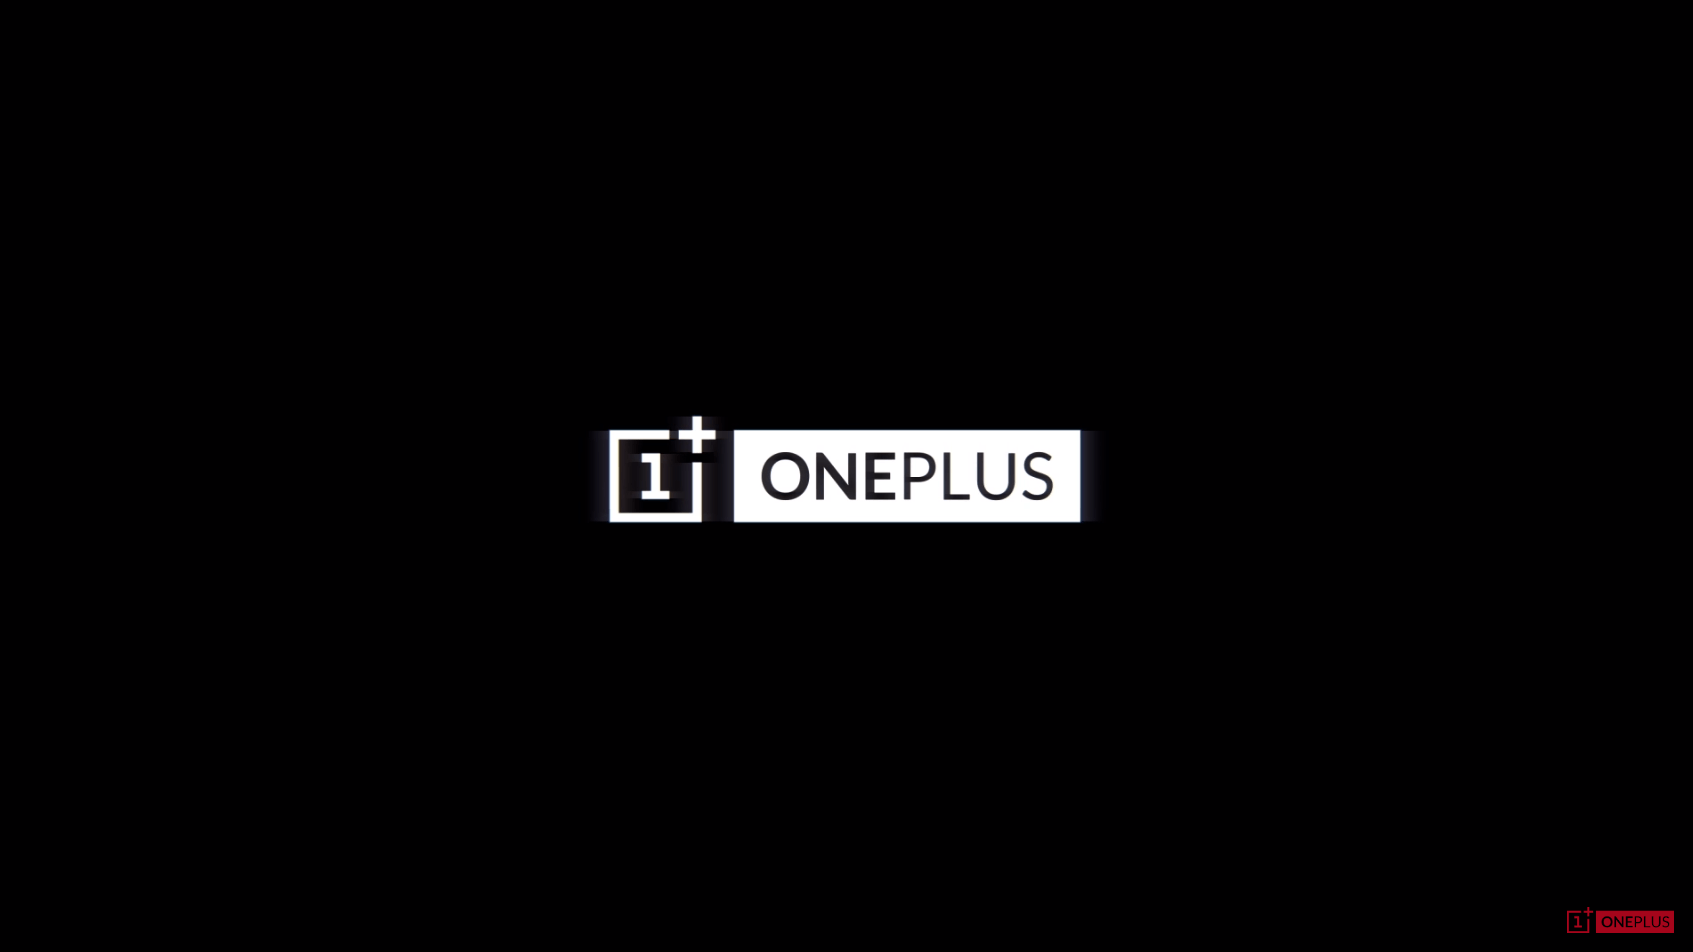 Its a phone. Логотип ванплас. ONEPLUS one logo. ONEPLUS gif. Обои с логотипом ONEPLUS.